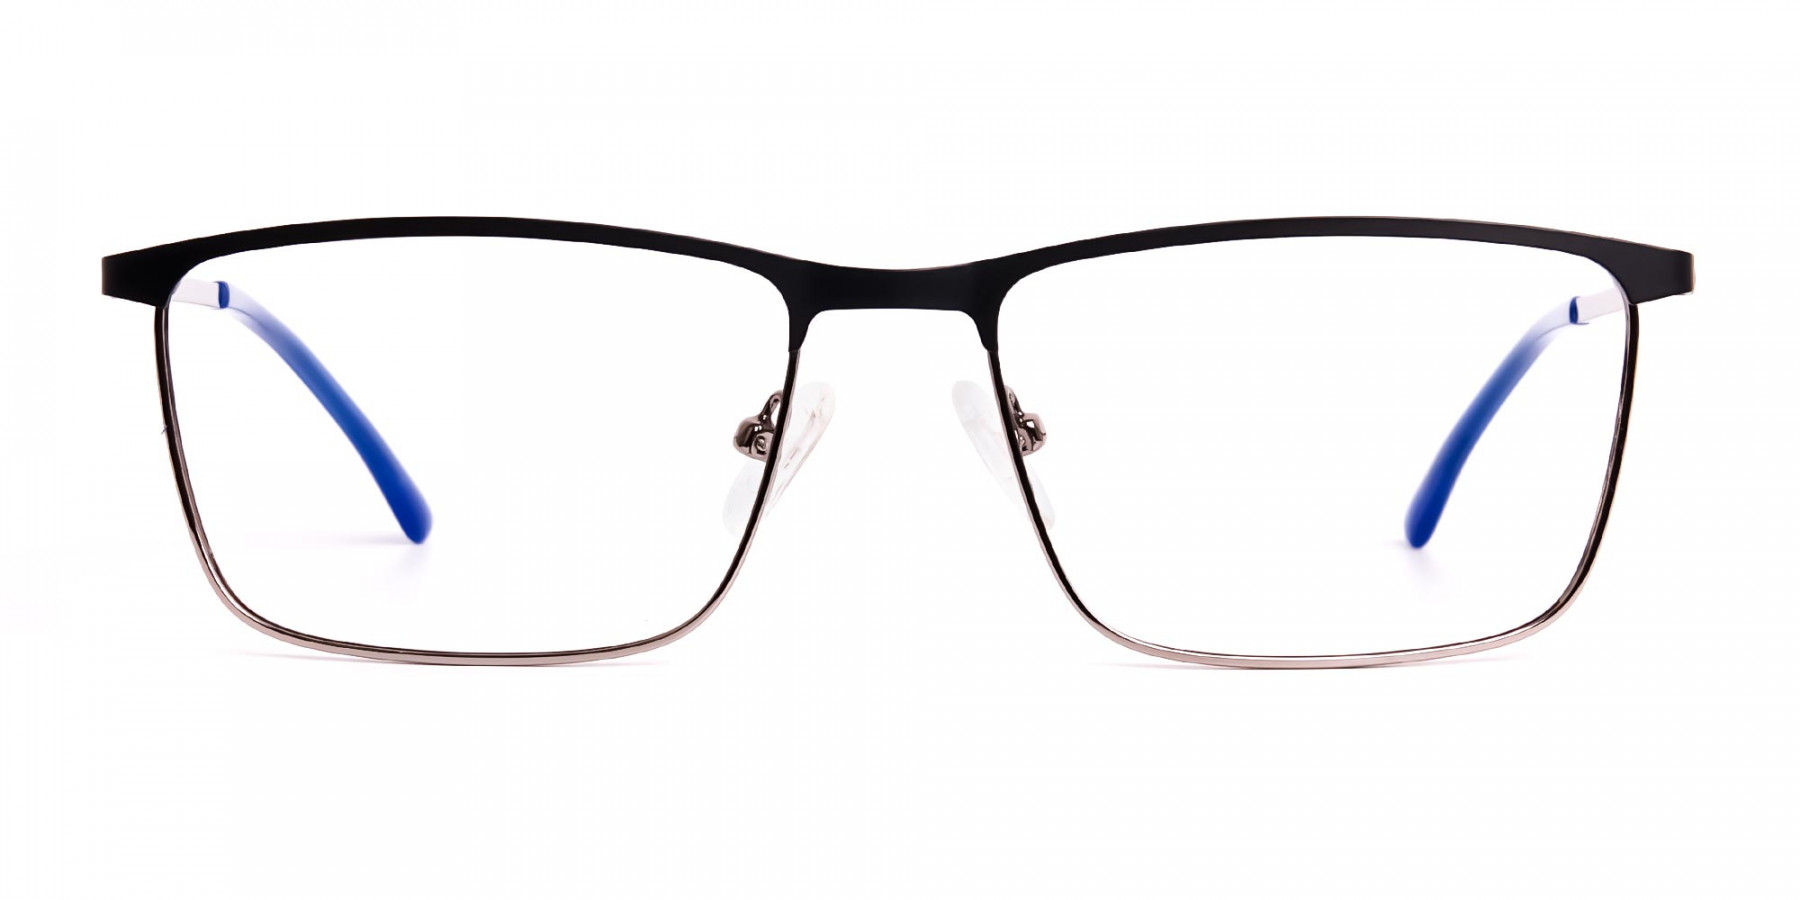 black-and-blue-gunmetal-rectangular-full-rim-glasses-frames-1